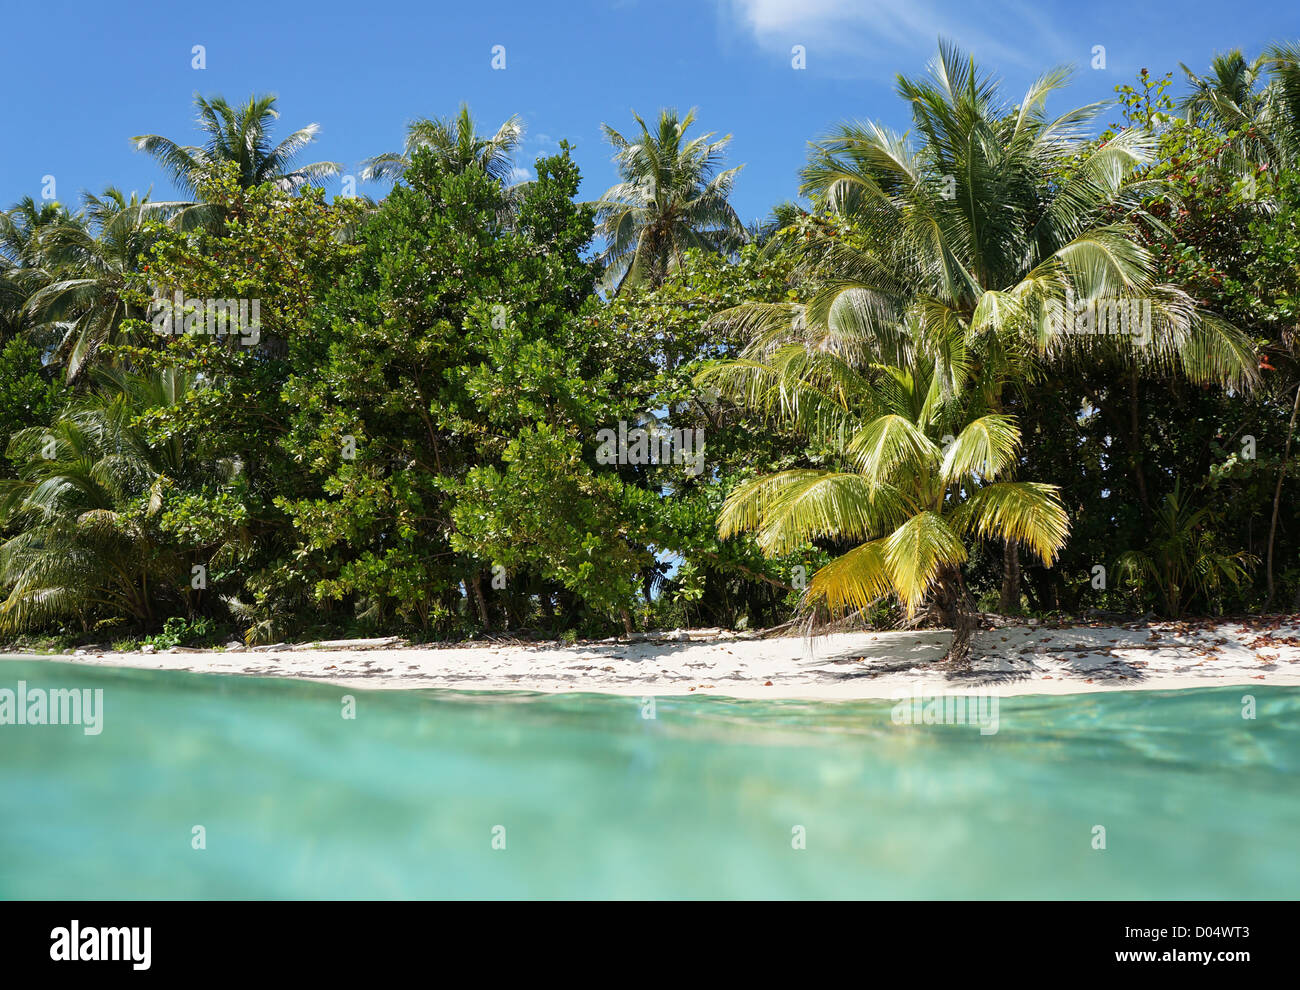 Côte plage tropicale avec sa végétation luxuriante vu à partir de la surface de l'eau, mer des Caraïbes Banque D'Images